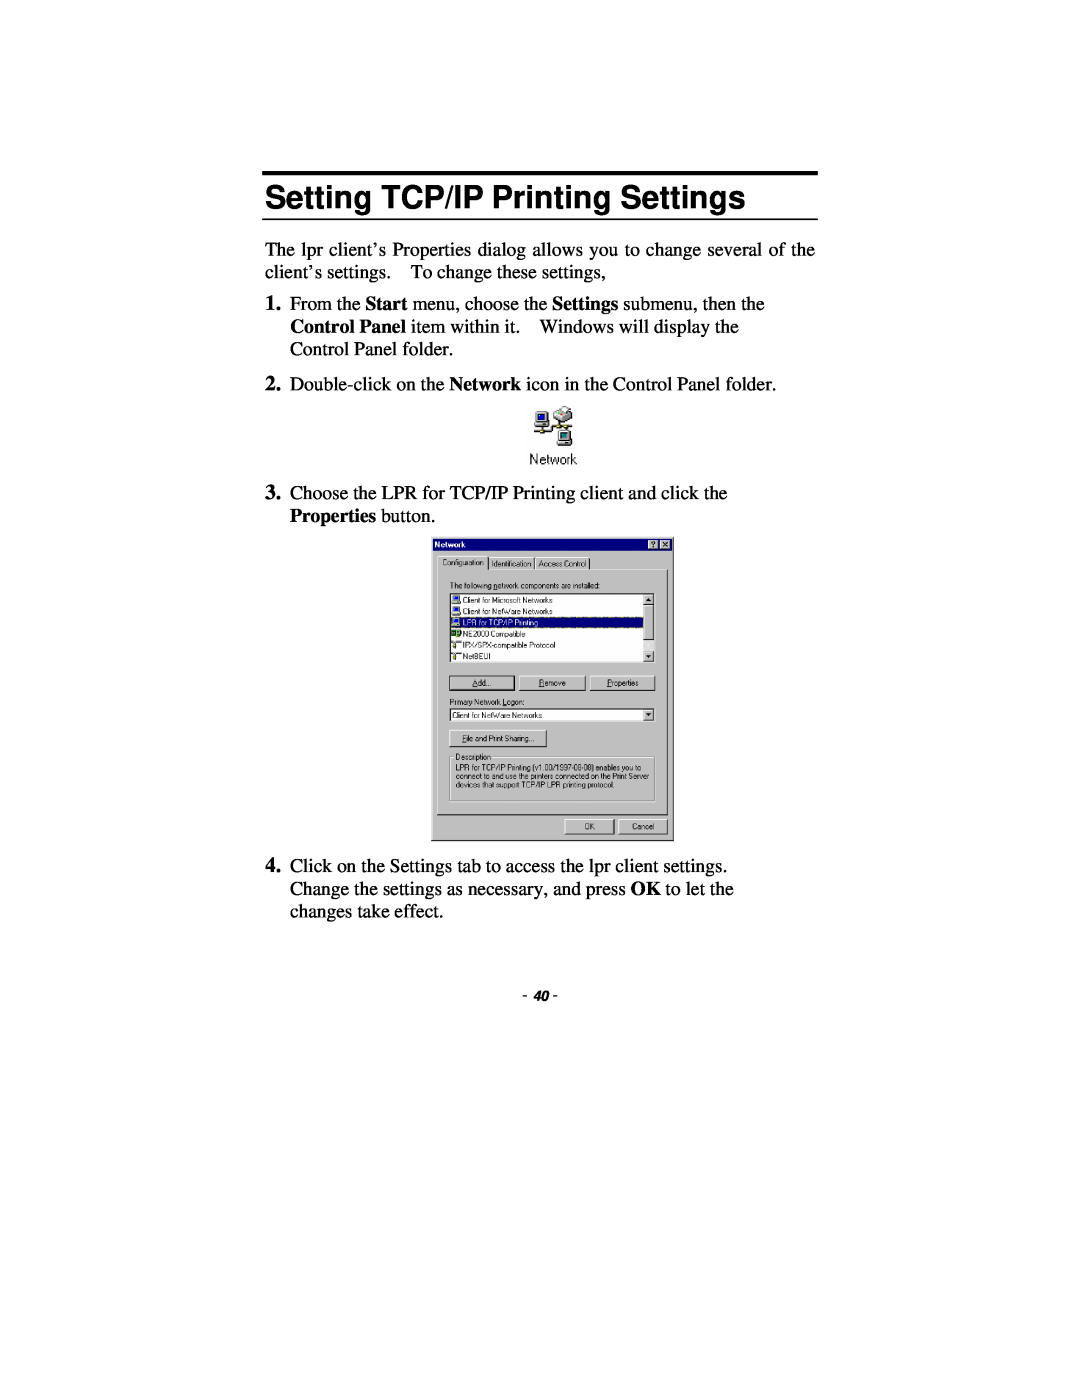 TRENDnet TE100-P1P manual Setting TCP/IP Printing Settings 